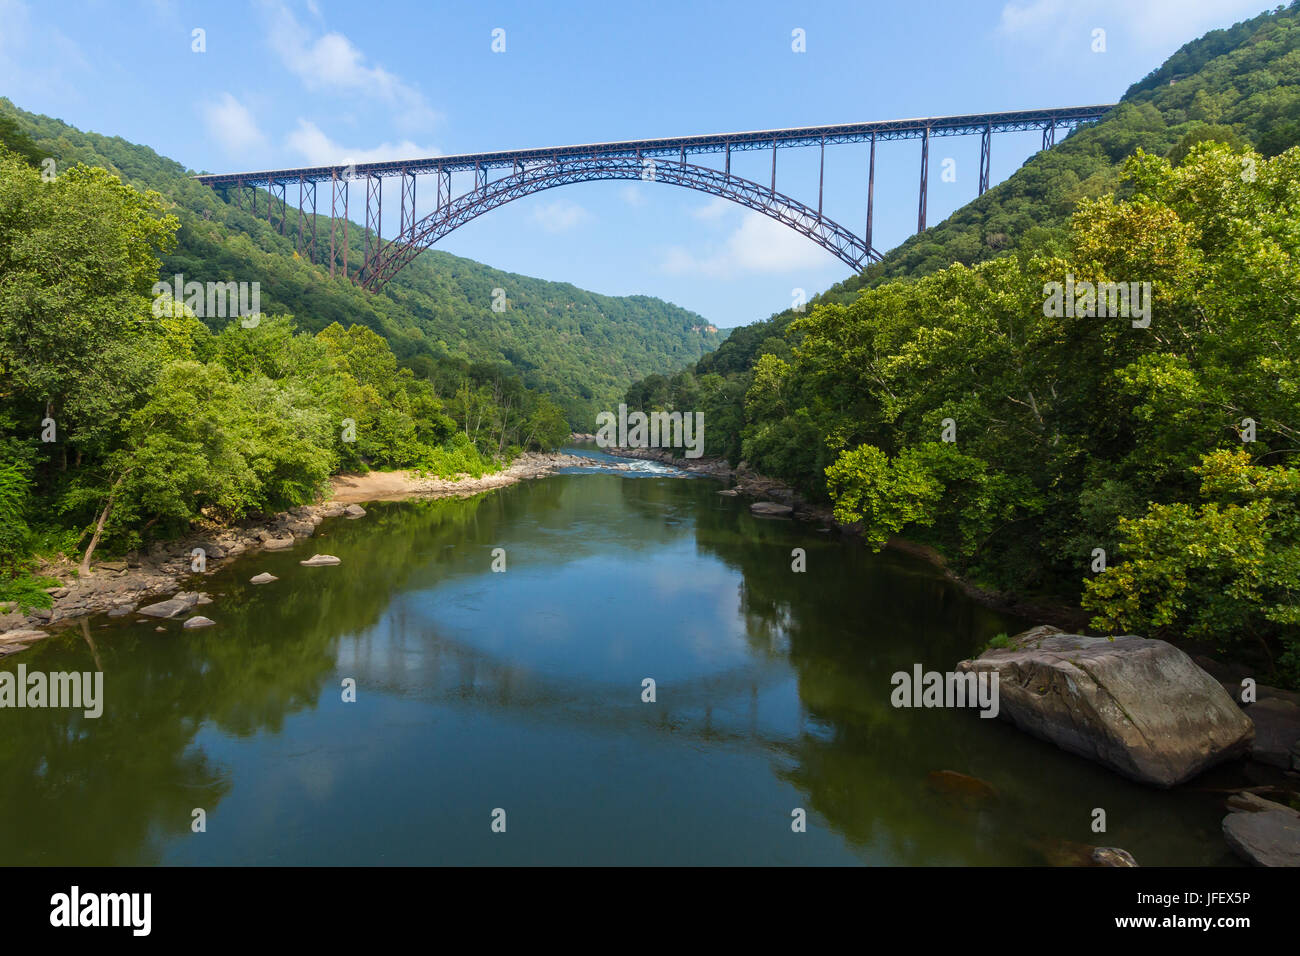 El puente sobre el nuevo River Gorge en West Virginia es el cuarto más largo de acero puente de arco único en el mundo. Foto de stock